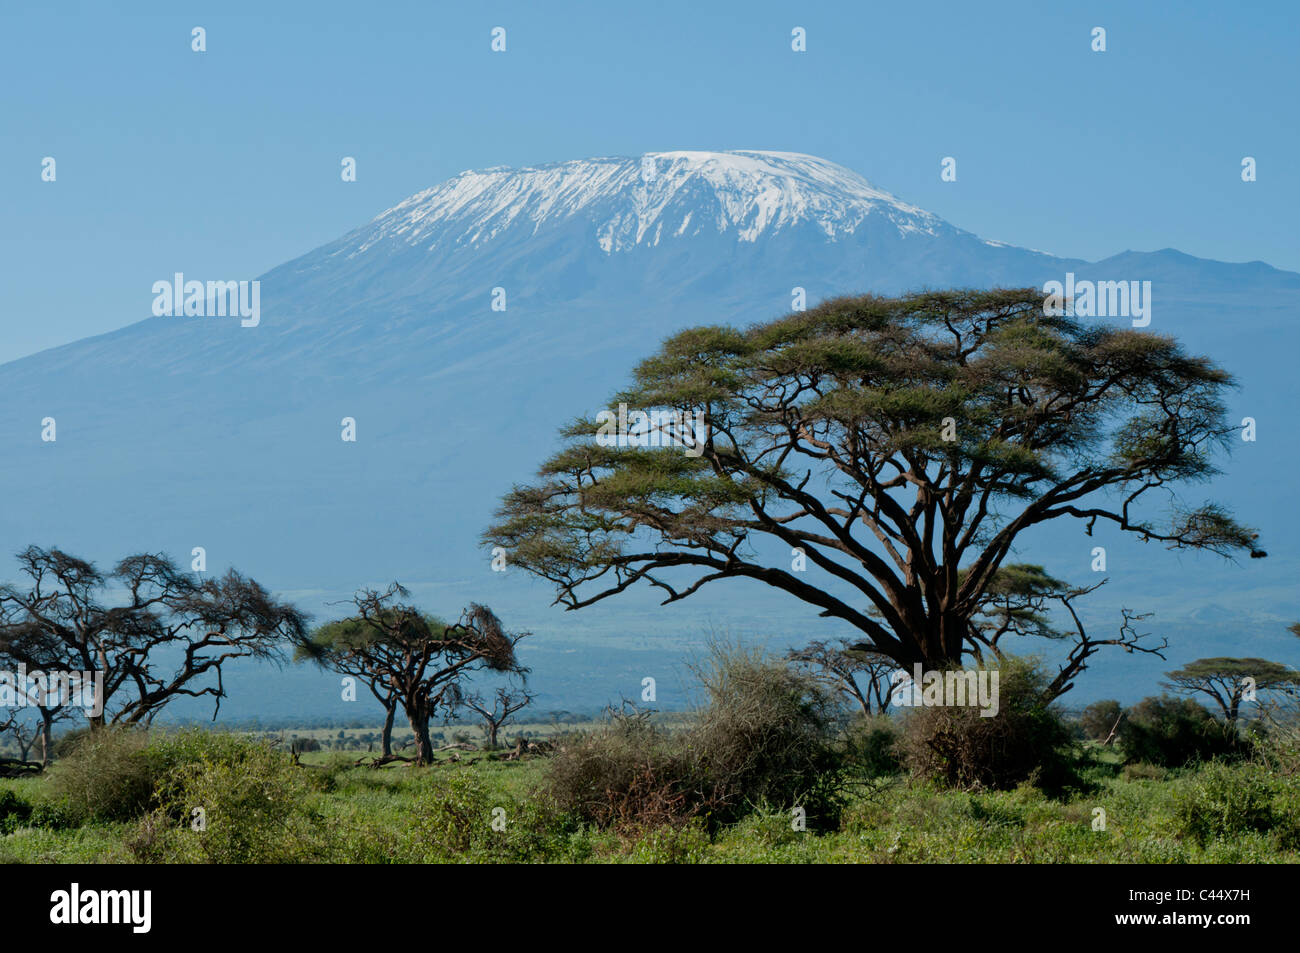 East Africa, Kenya, Tanzania, Kilimanjaro, Amboseli, volcano, mountain, symmetry, snow, acacia, tree, game reserve, park, touris Stock Photo